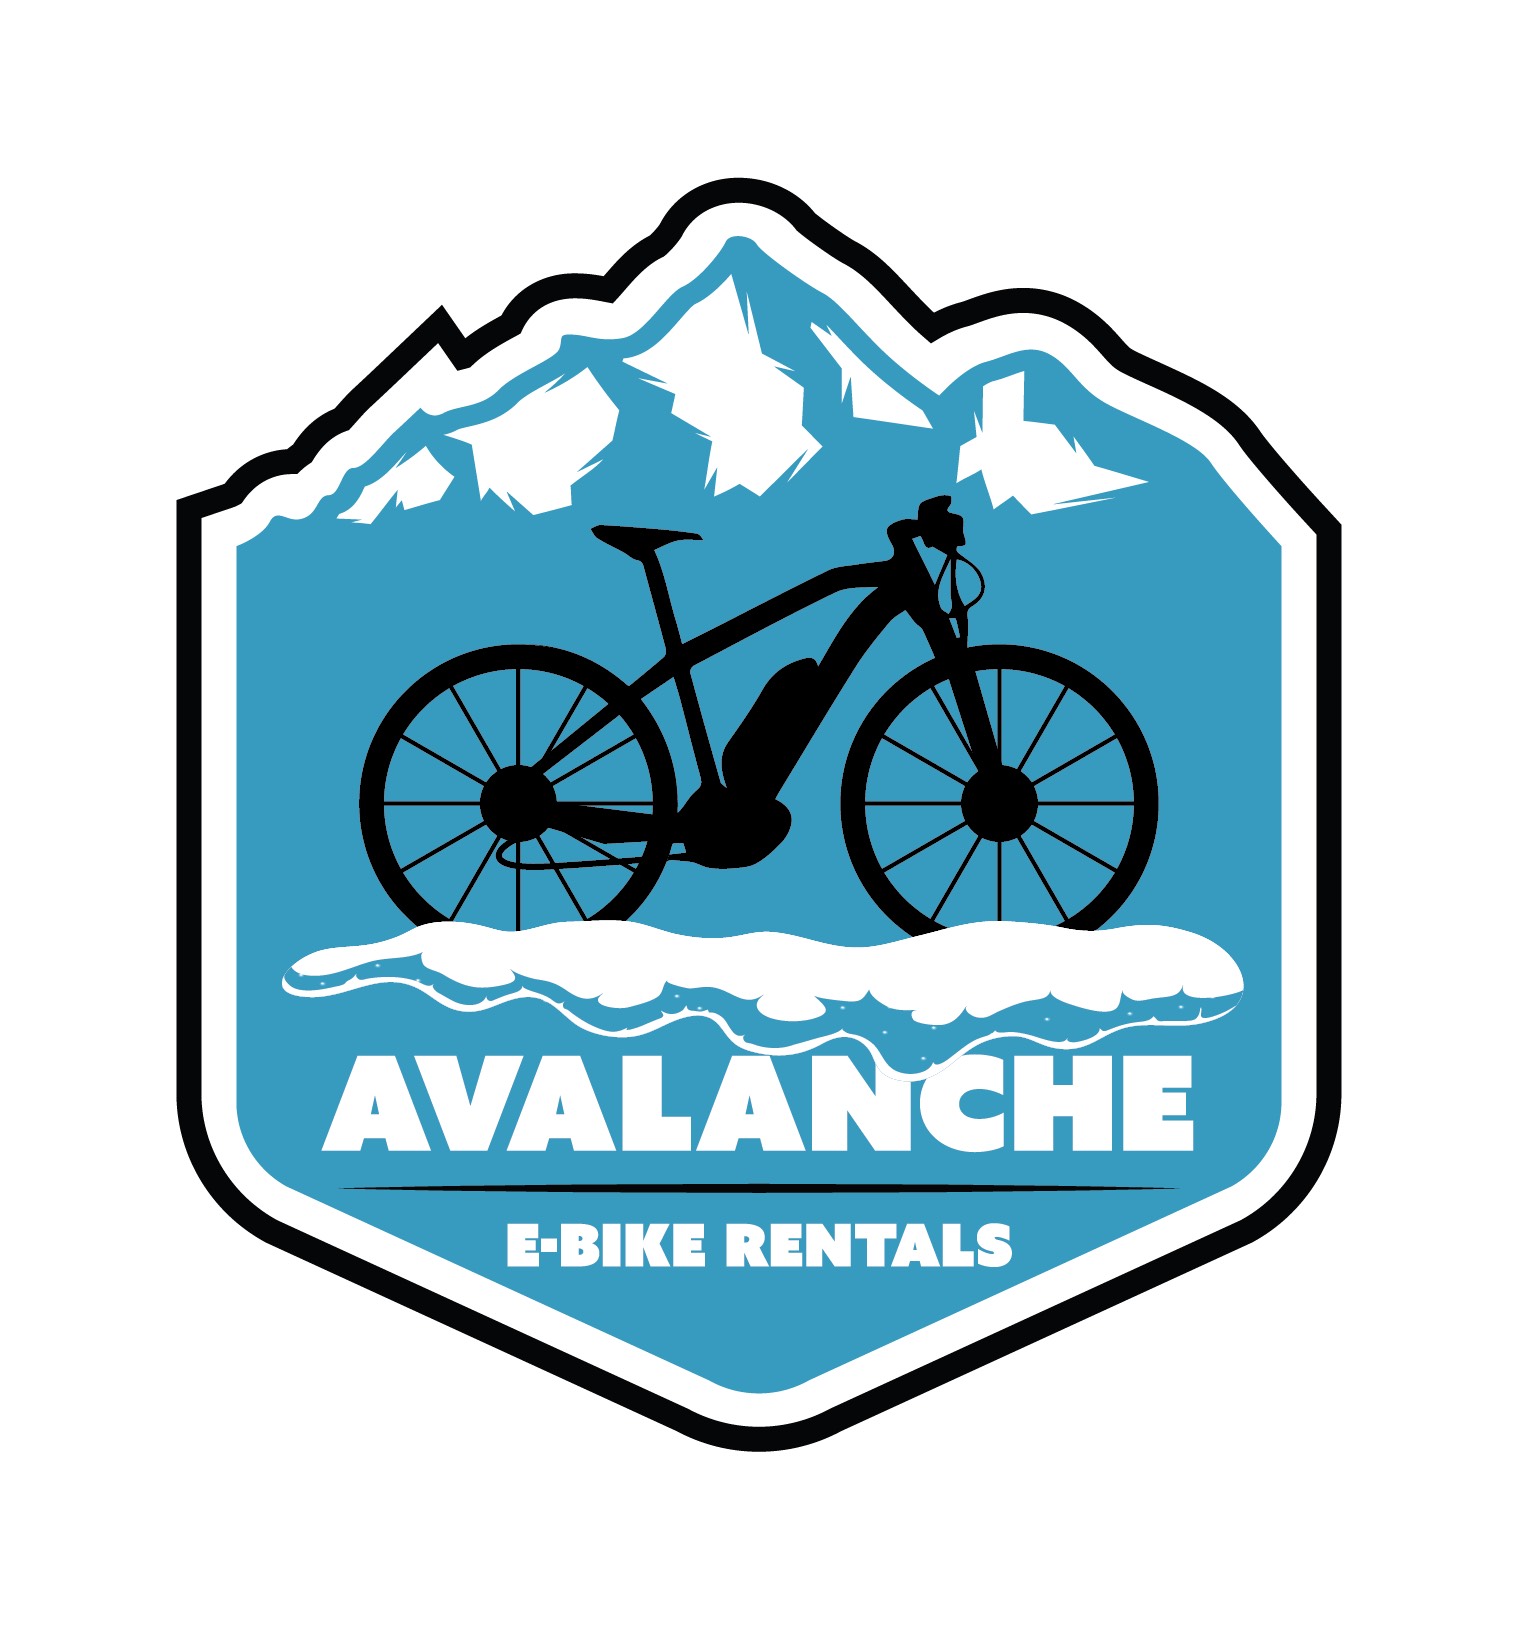 Avalance e-bike rentals